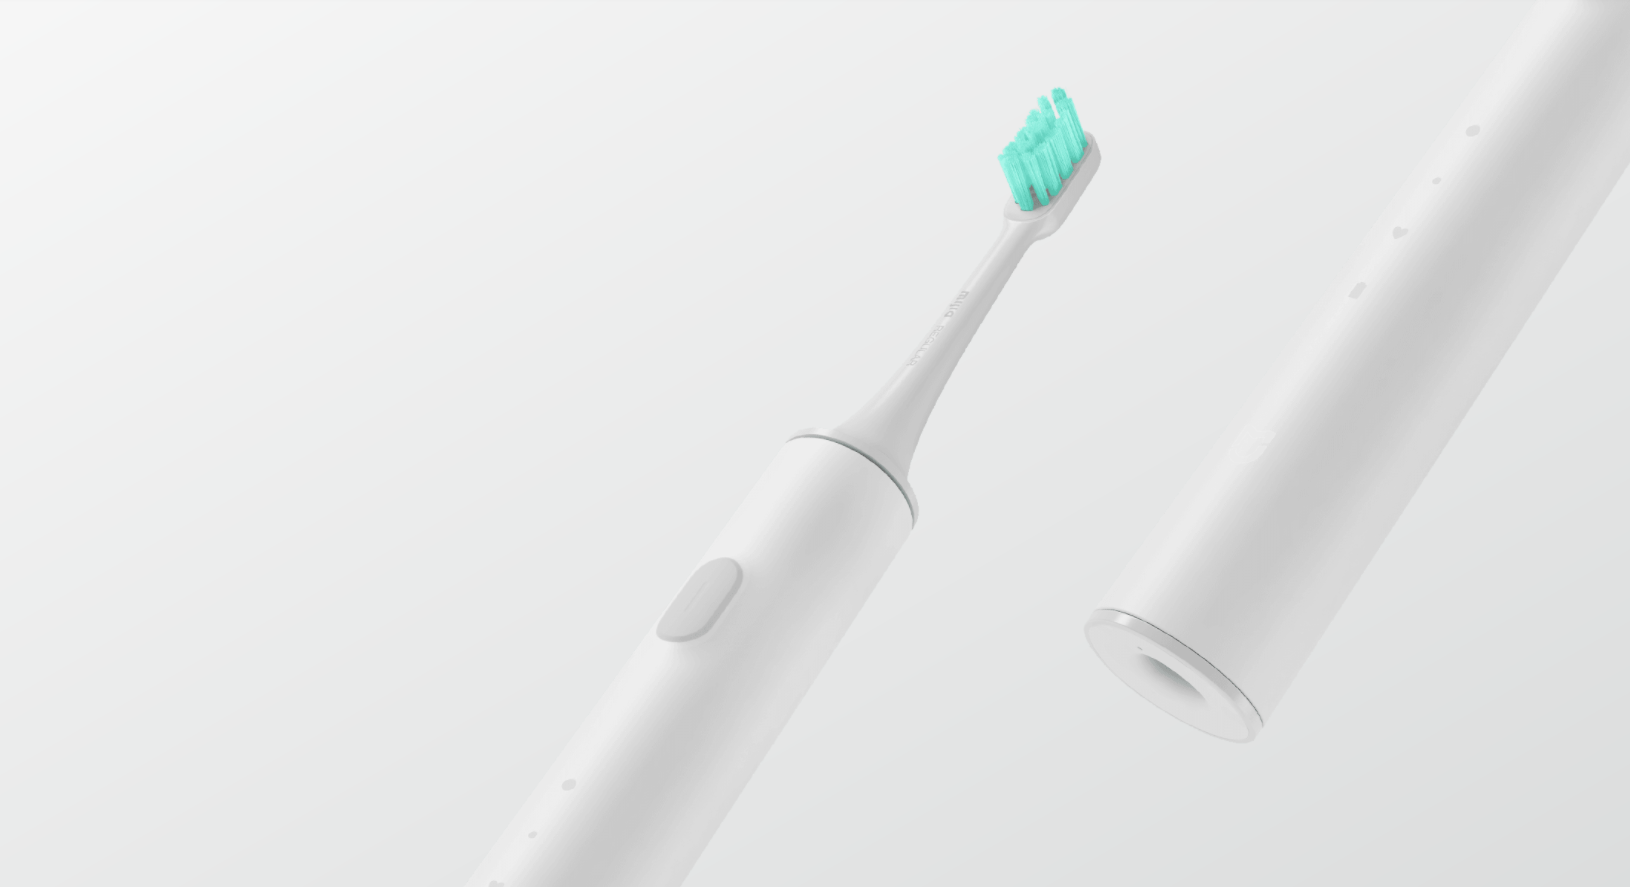 Oclean endurance e5501 white. Электрическая зубная щетка Xiaomi t500. Электрическая зубная щетка Xiaomi t500, белый. Щетка Xiaomi t500 Blue. Xiaomi Mijia зубная щетка.